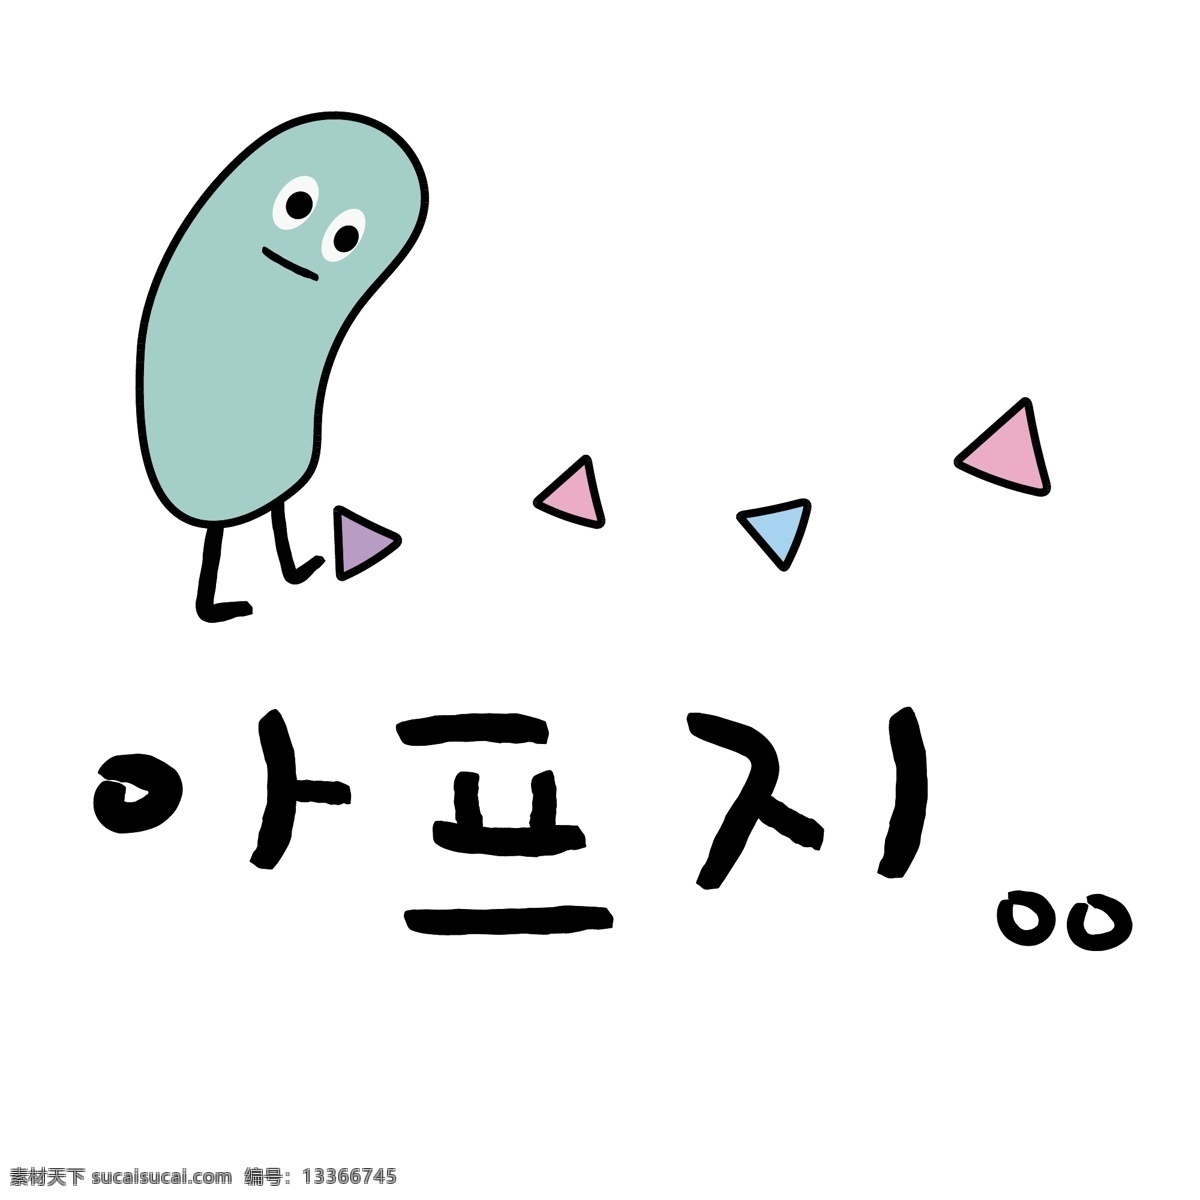 椭圆 三角形 悲伤 韩国 常用语 肝药 绿色 对话 漫画 小的 向量 n 痛吧 日常用语 卡通